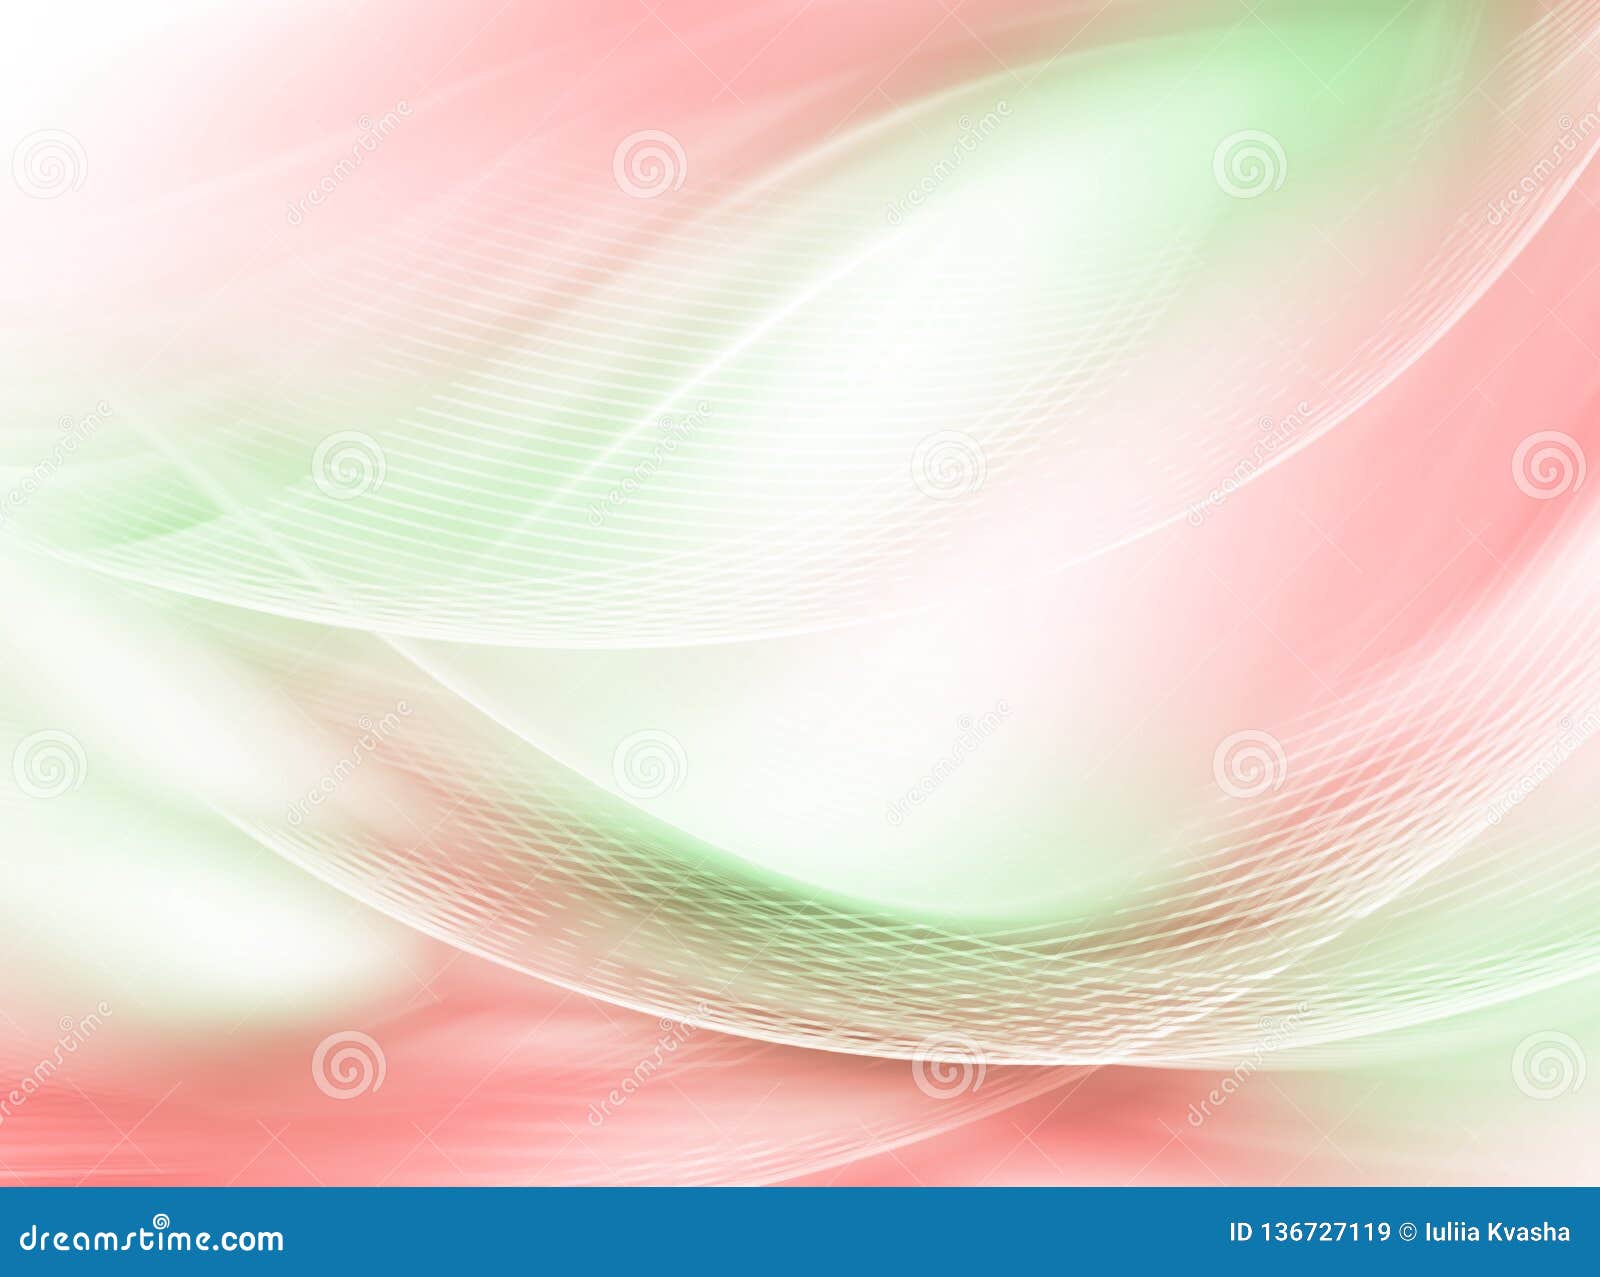 Pink Green Abstract Background - Hình nền trừu tượng màu hồng xanh: Hãy chọn cho mình một hình nền trừu tượng màu hồng xanh đi kèm với hiệu ứng pha trộn đầy màu sắc! Bộ sưu tập của chúng tôi sẽ mang đến cho bạn sự bất ngờ và mãn nhãn bởi những khối màu đầy tượng trưng và phối hợp hài hòa. Làm cho màn hình của bạn trở nên tuyệt đẹp hơn với bộ sưu tập hình nền trừu tượng này.